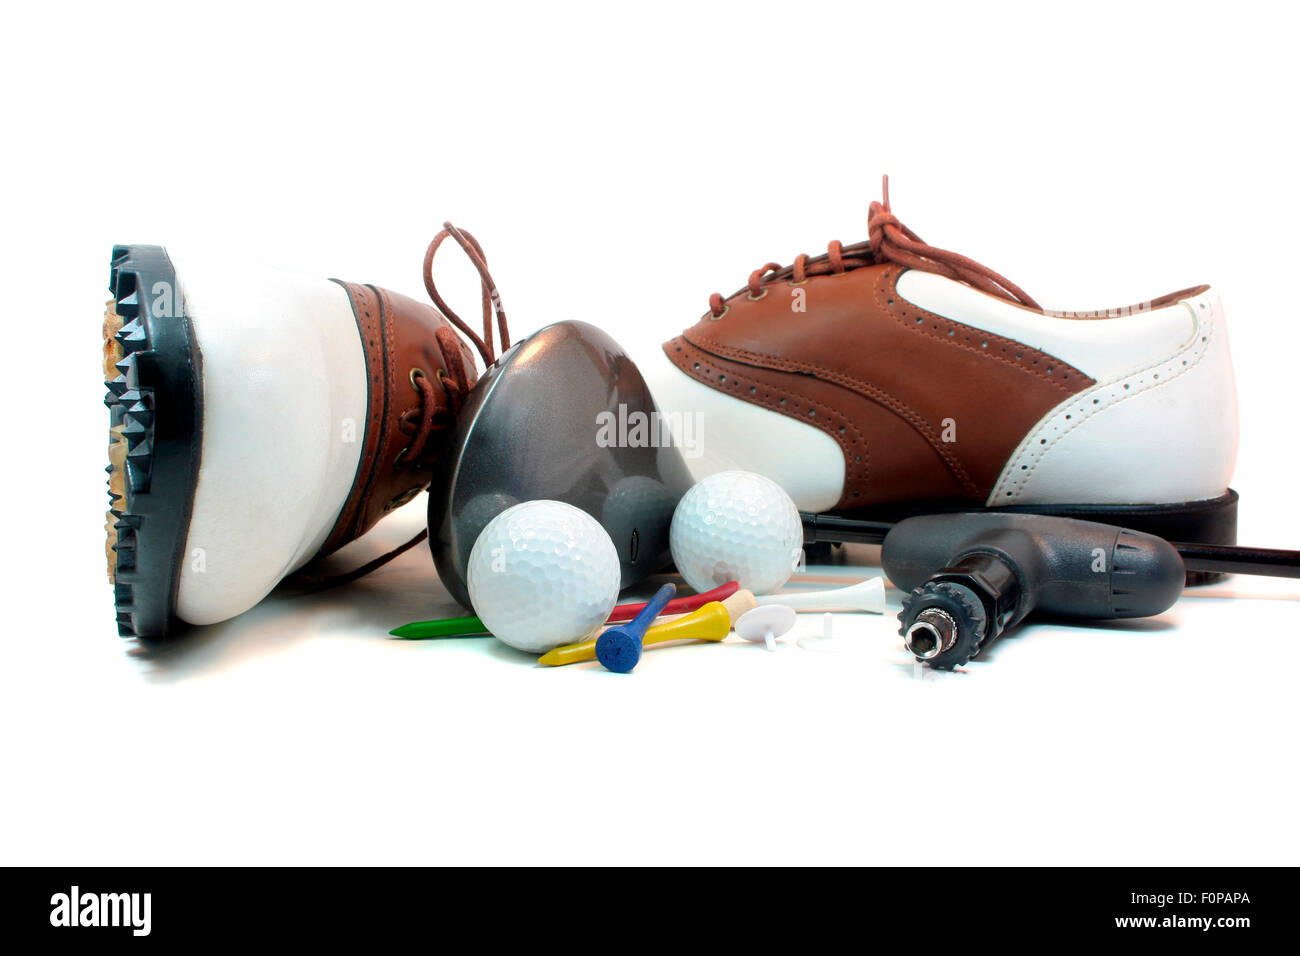 Scarpe da golf e accessori isolati su sfondo bianco Foto Stock